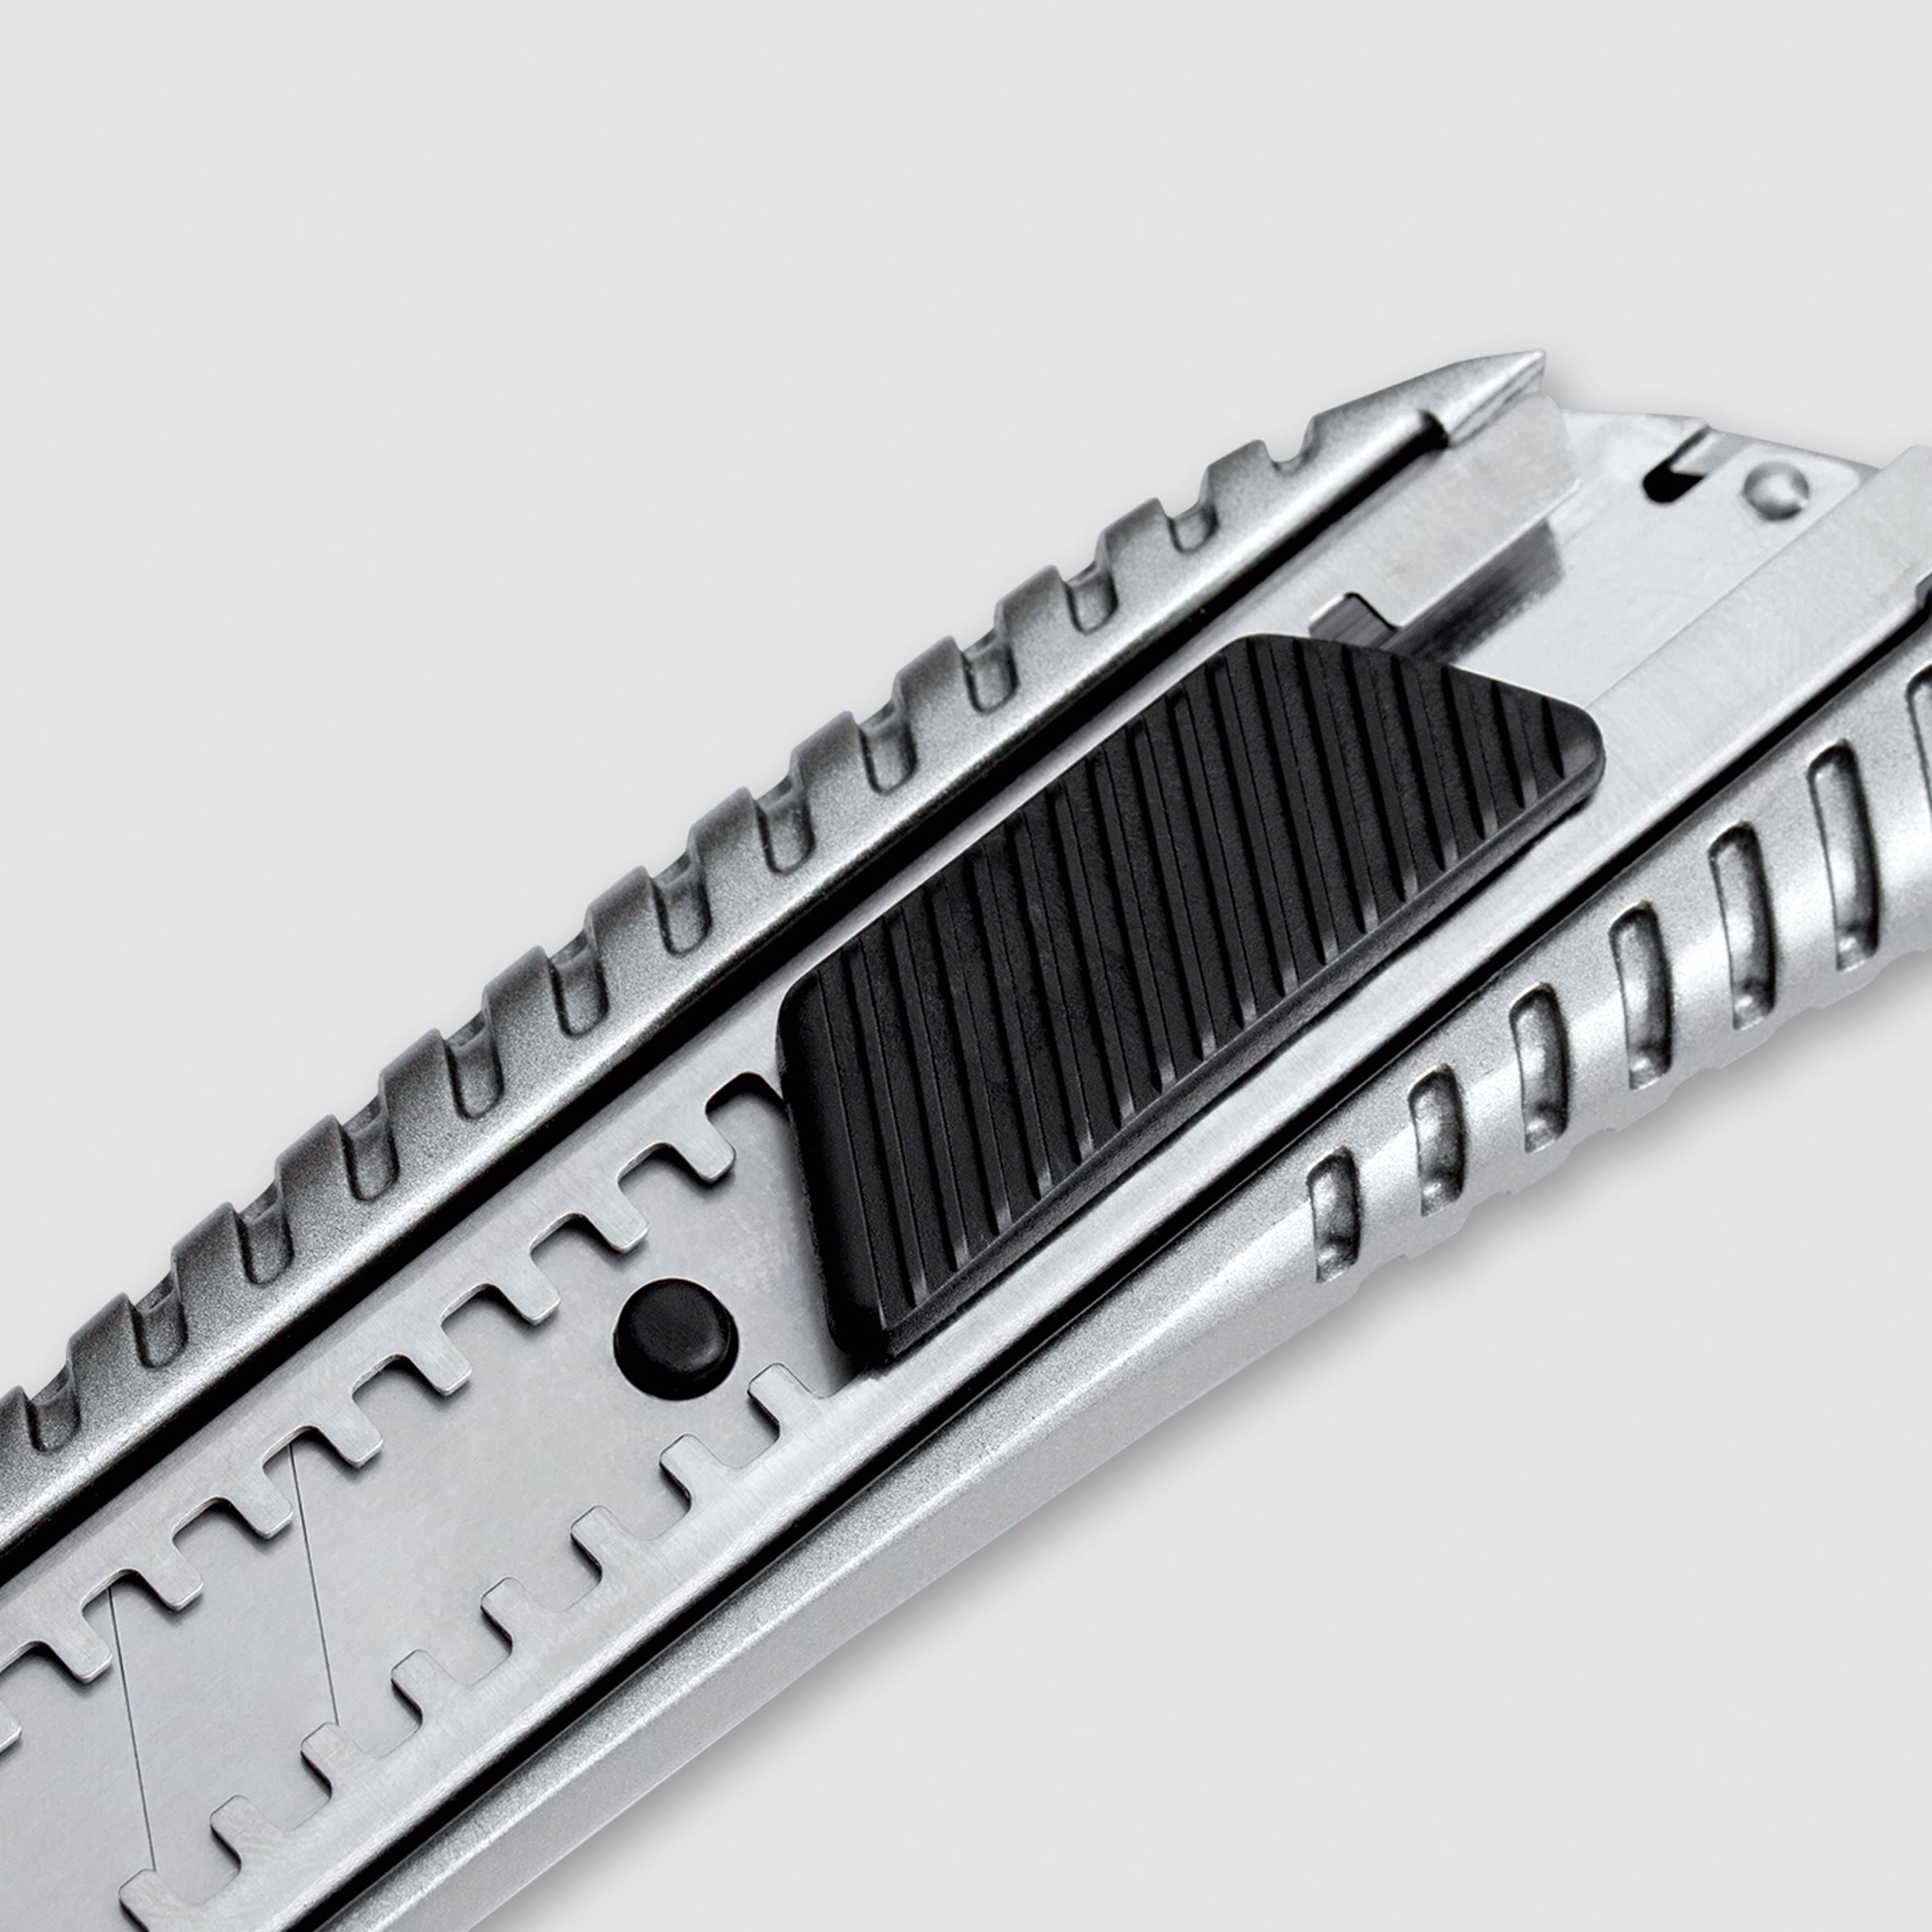 18mm Aluminium Ergo Cutter Knife - LDBA5 by Komelon